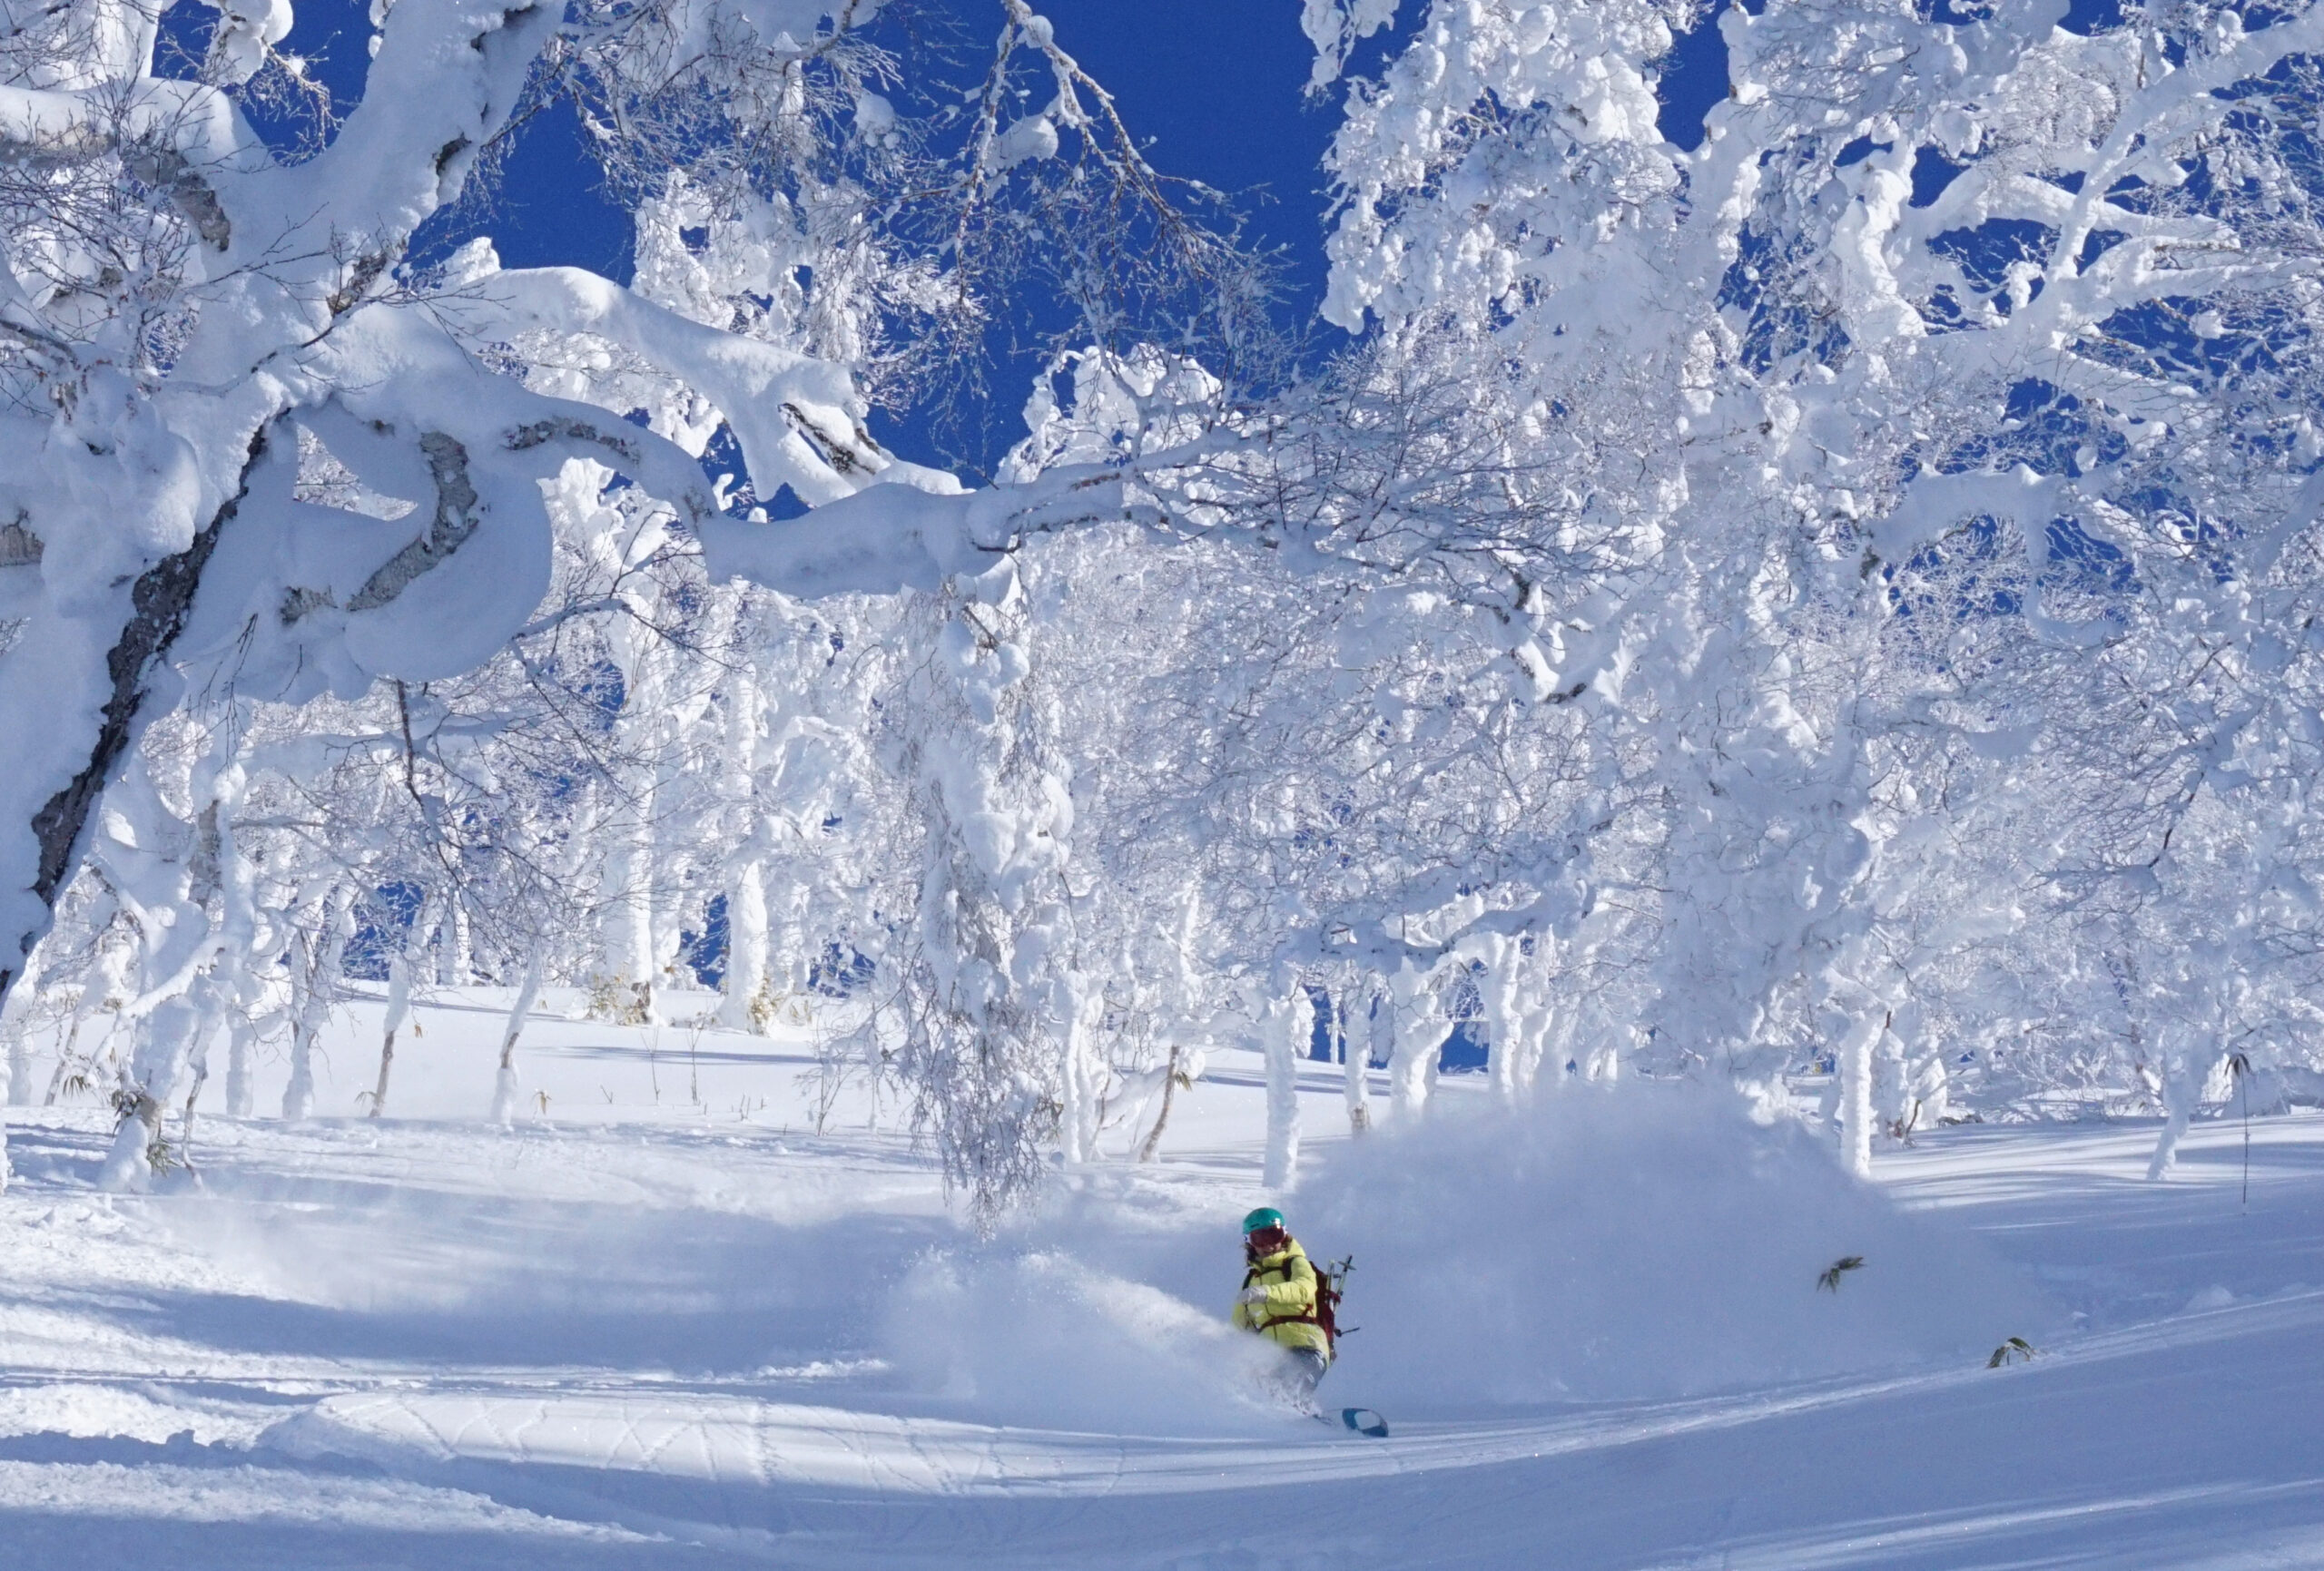 Trip Report: Snowy Adventures in Japan